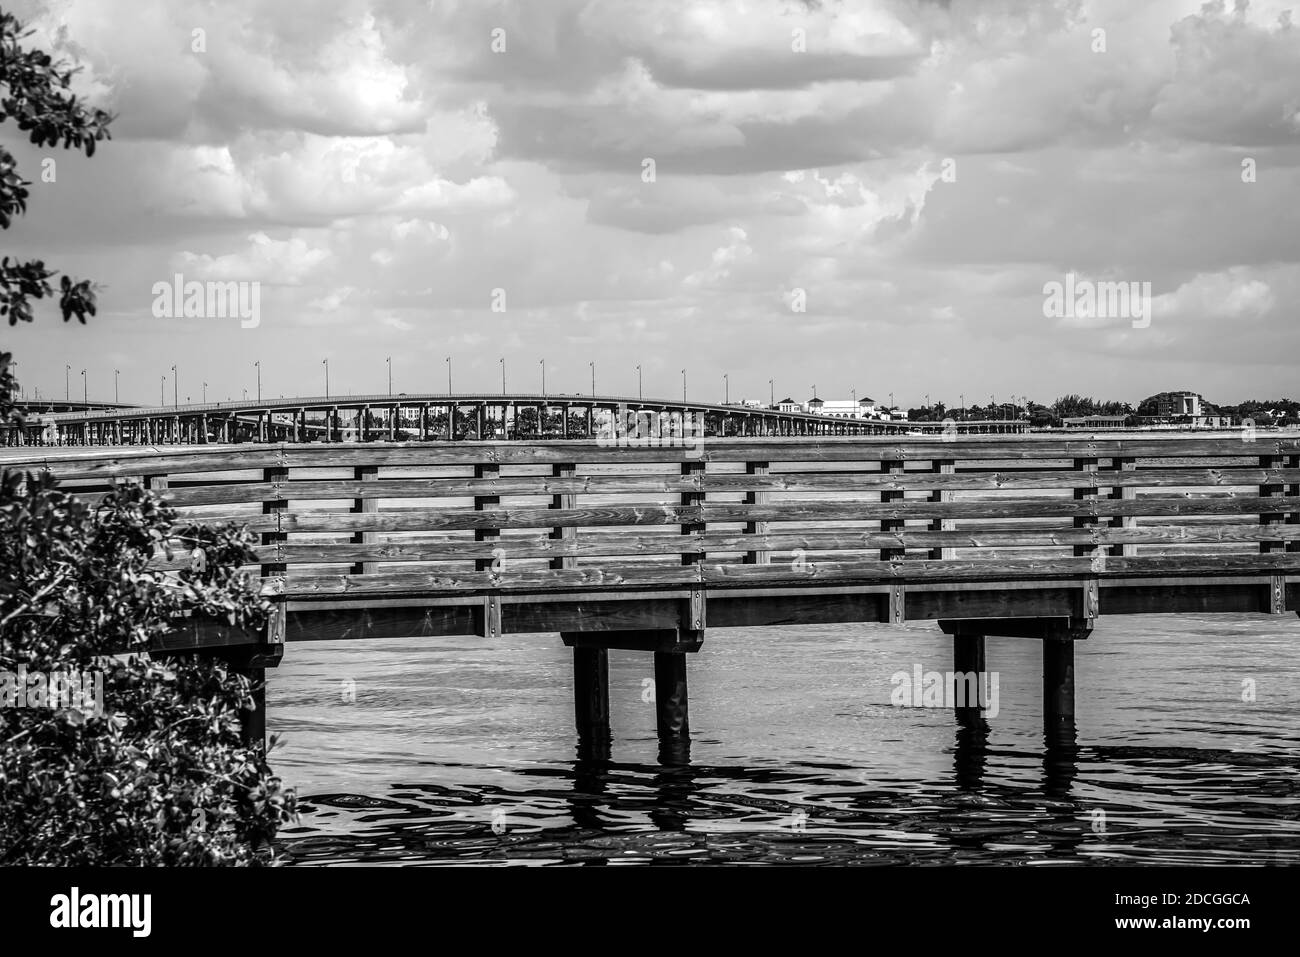 Les jetées de pêche dans le port de Charlotte, dans le sud-ouest de la Floride, sont en noir et blanc. Banque D'Images